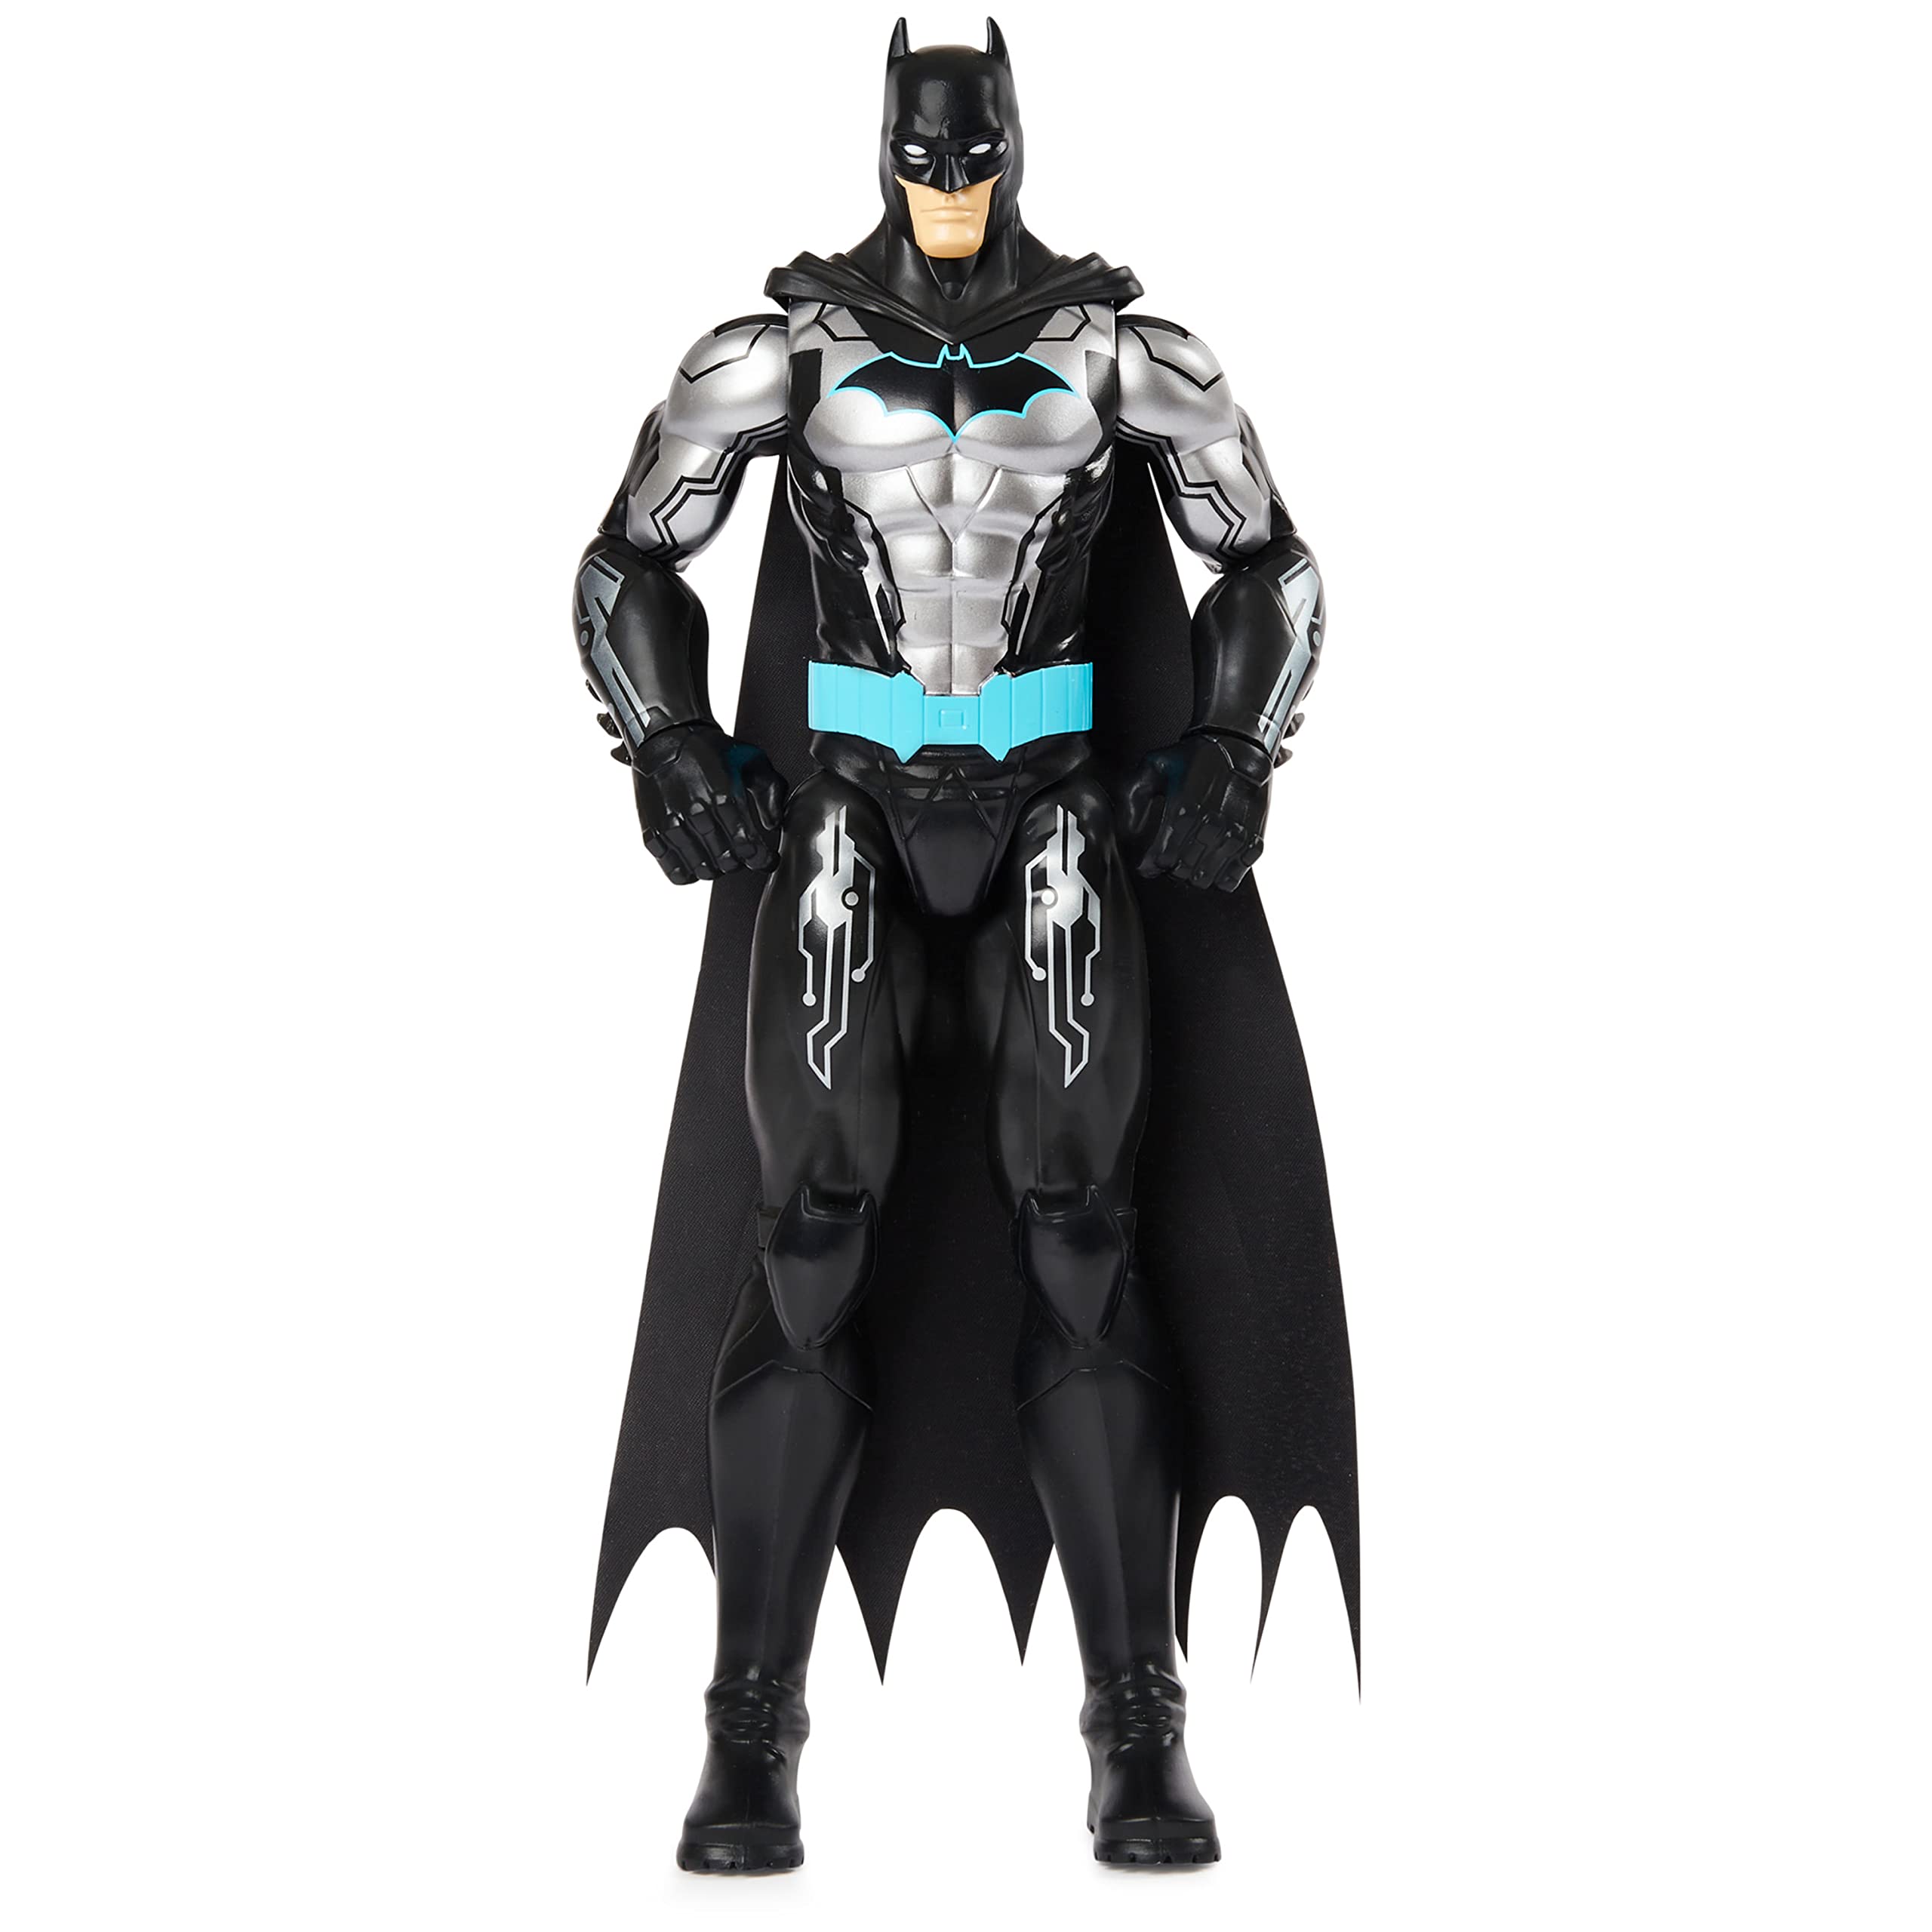 DC Comics - Figura de acción de Batman, motivo de Bat-Tech (traje negro/azul)